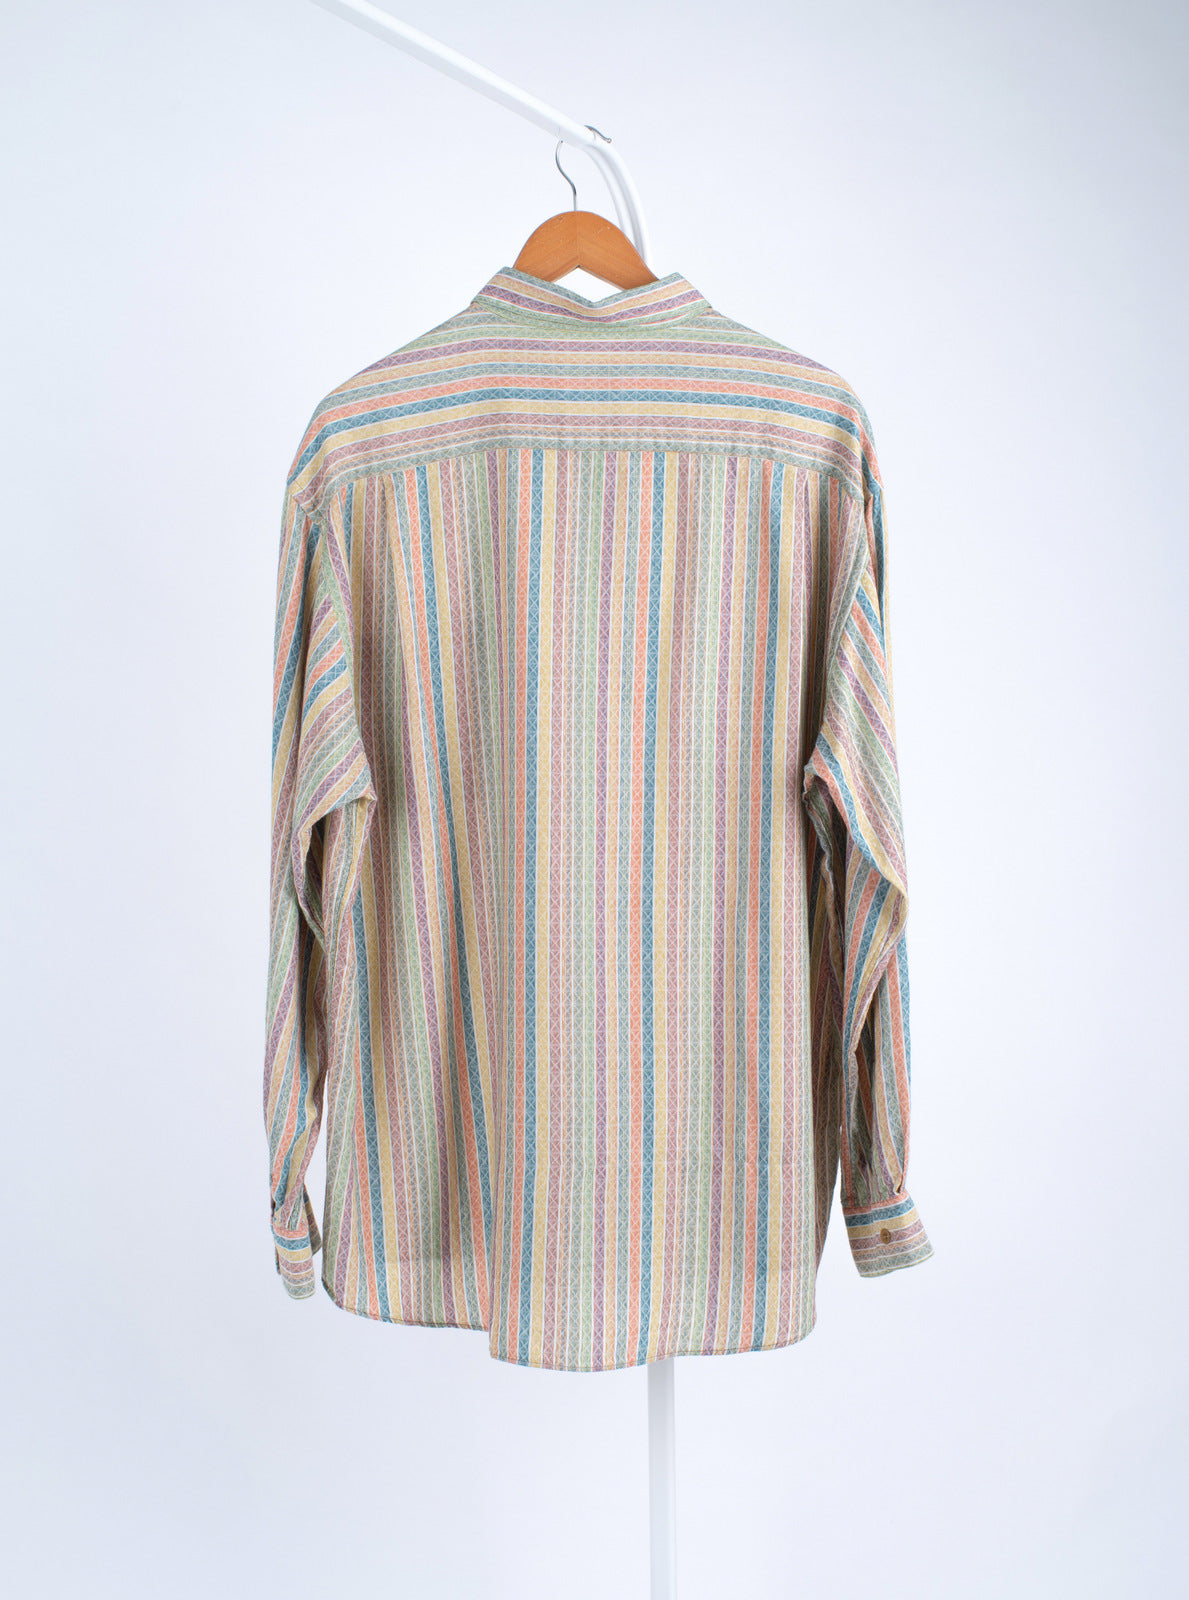 Missoni Sport Men's Vintage Multicolor Button Up Shirt, XL